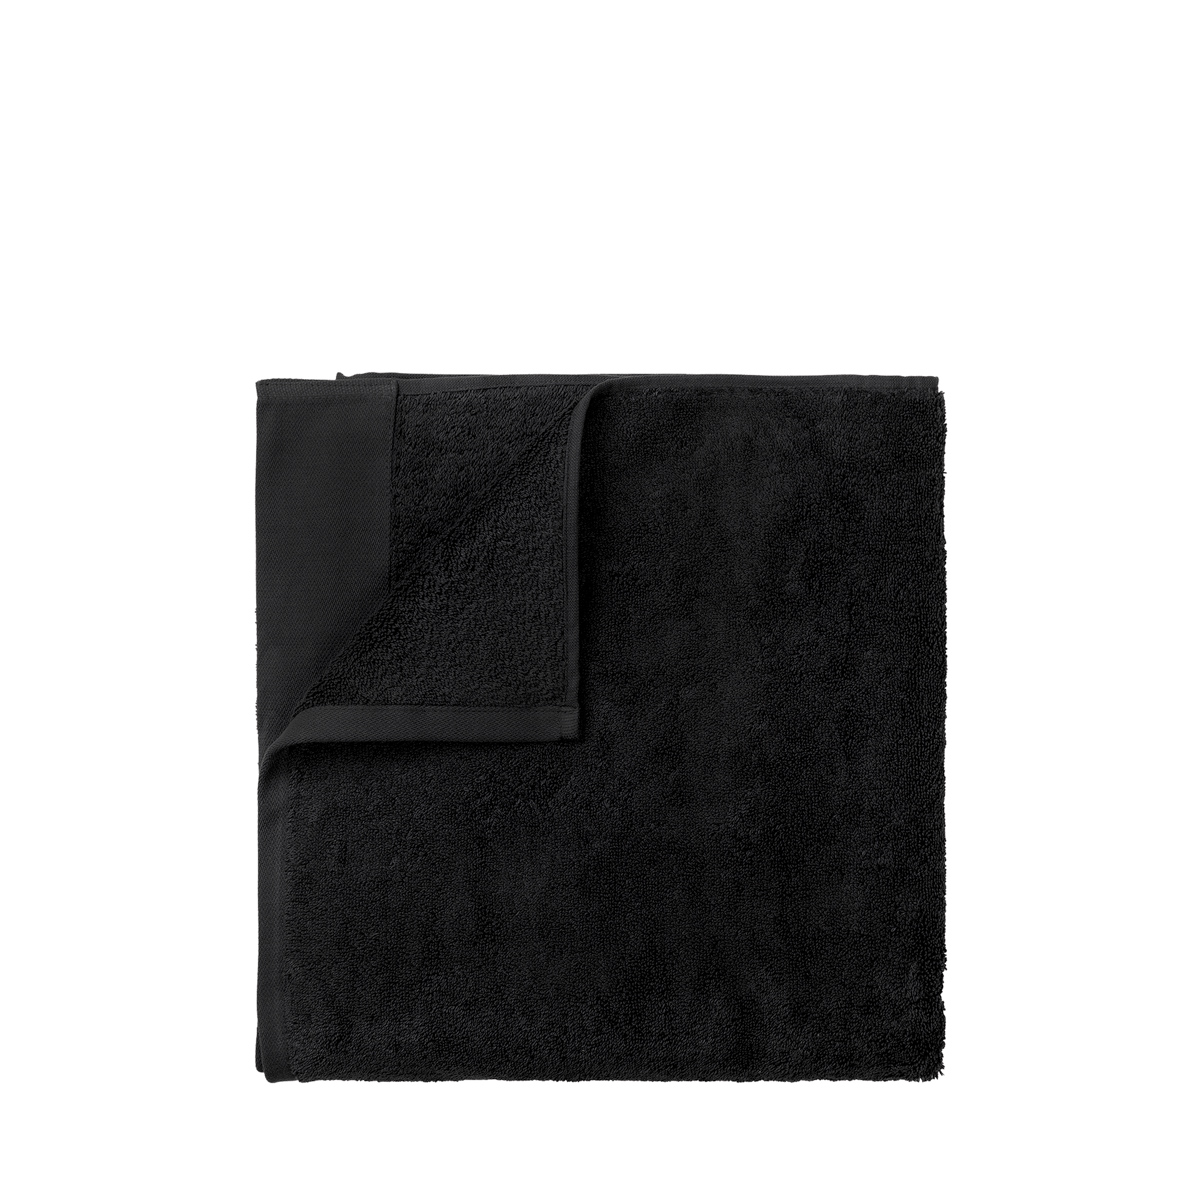 Handtuch -RIVA- Black 50x x100 cm. Material: Baumwolle. Von Blomus.